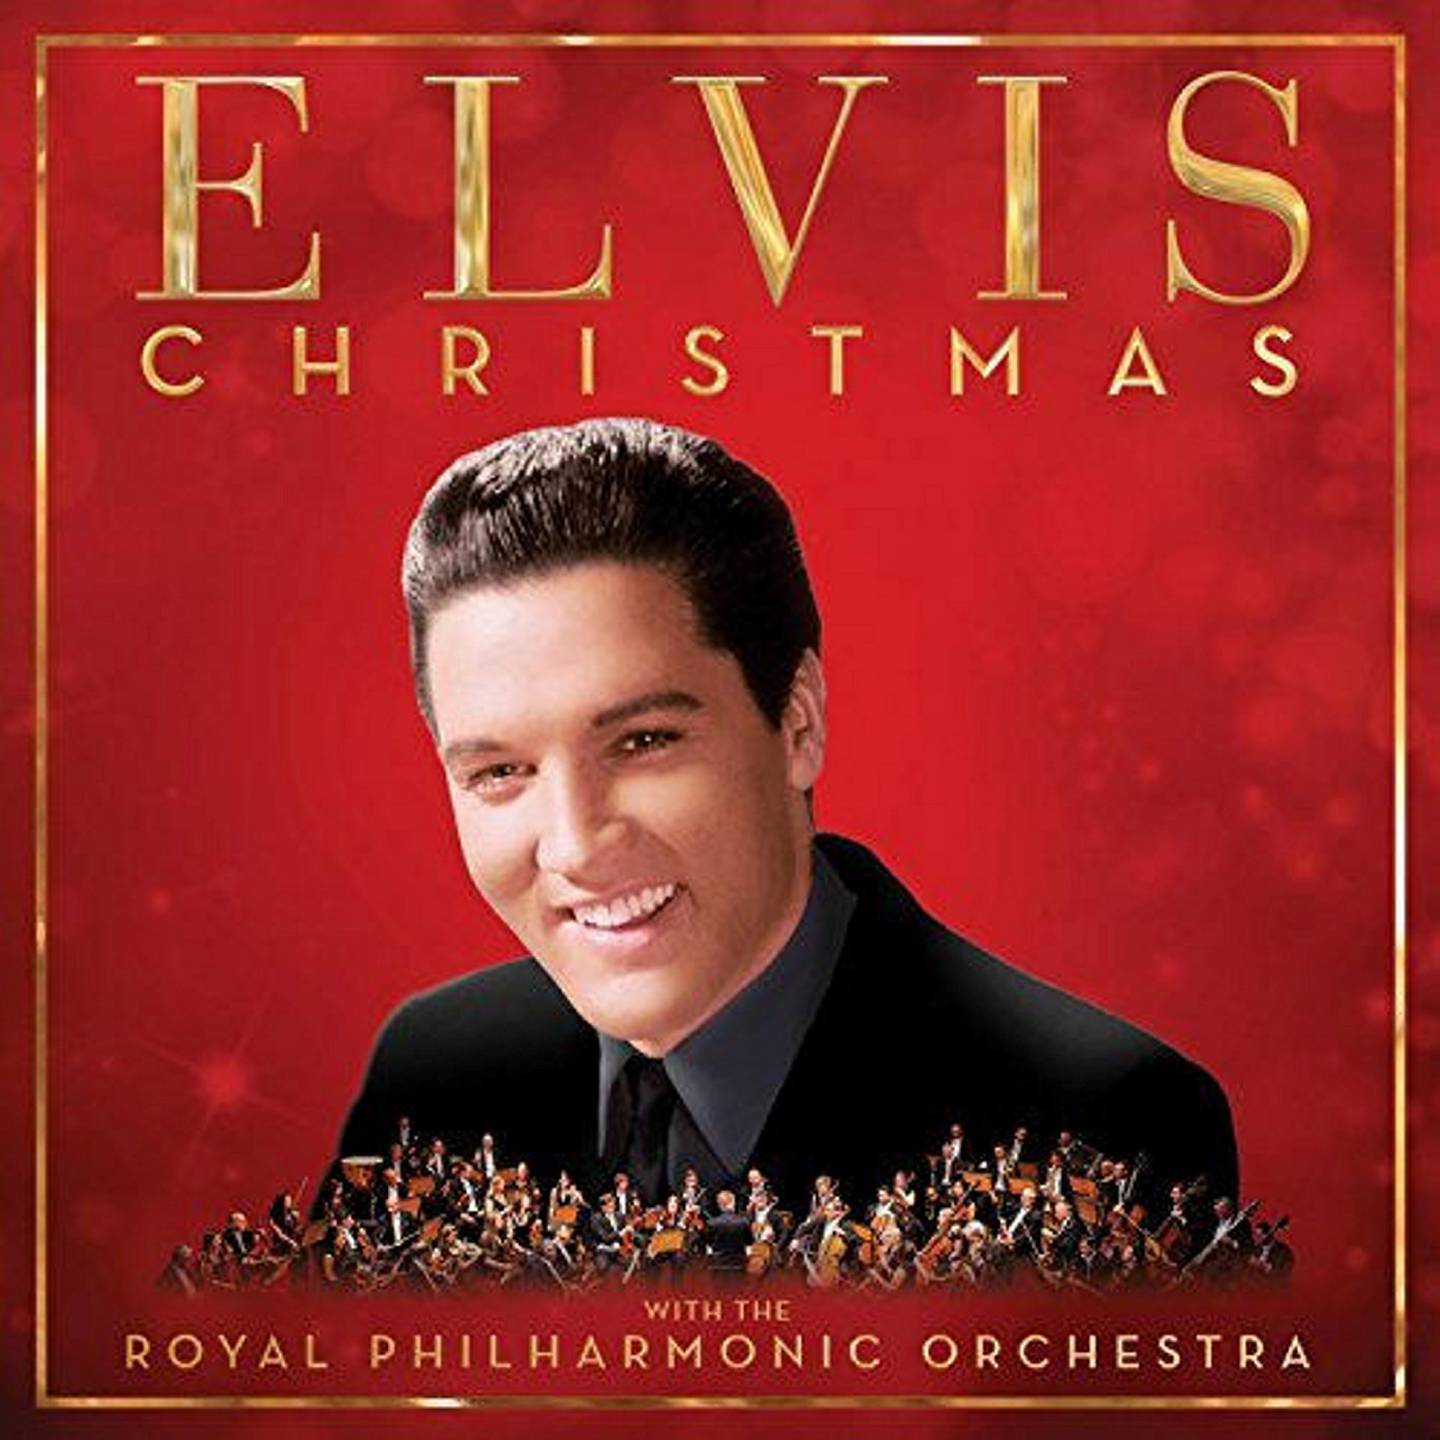 Elvis Presley,KUL Anm Musikk B 1 sp:«Elvis Christmas»
KUL Anm Musikk C 1 sp:RCA/SONY